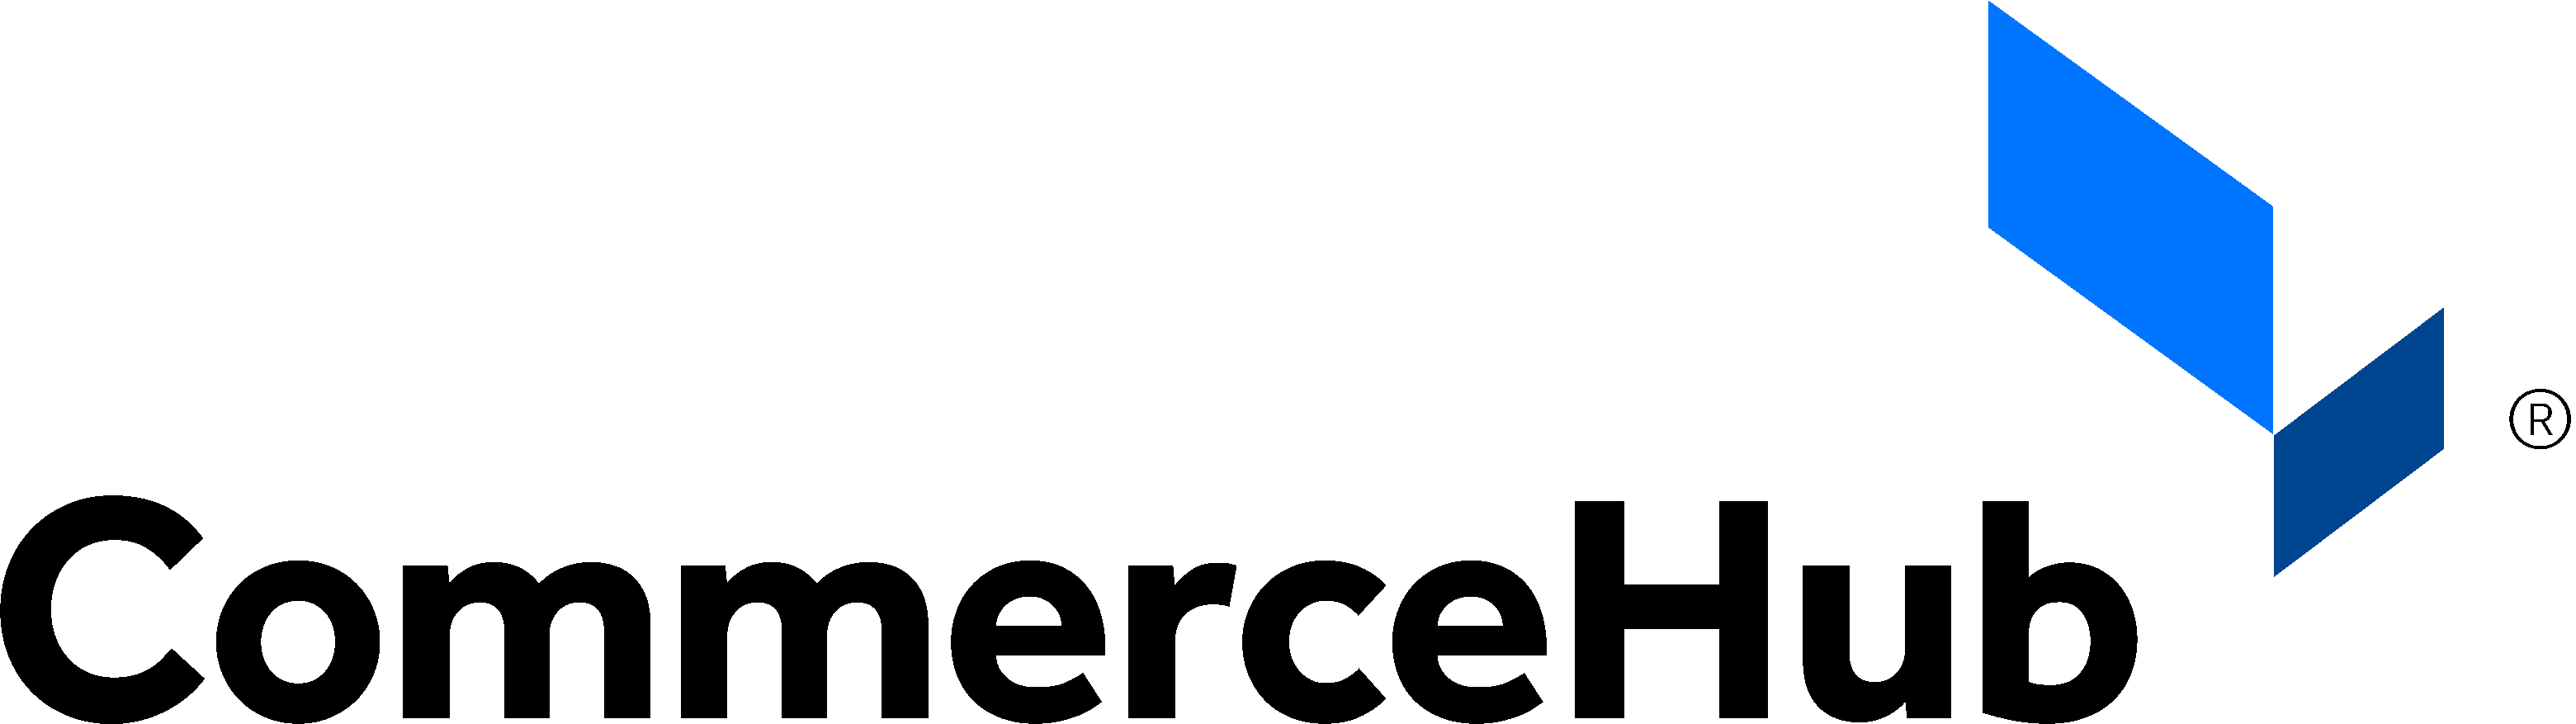 CommerceHub Logo - Exhibit